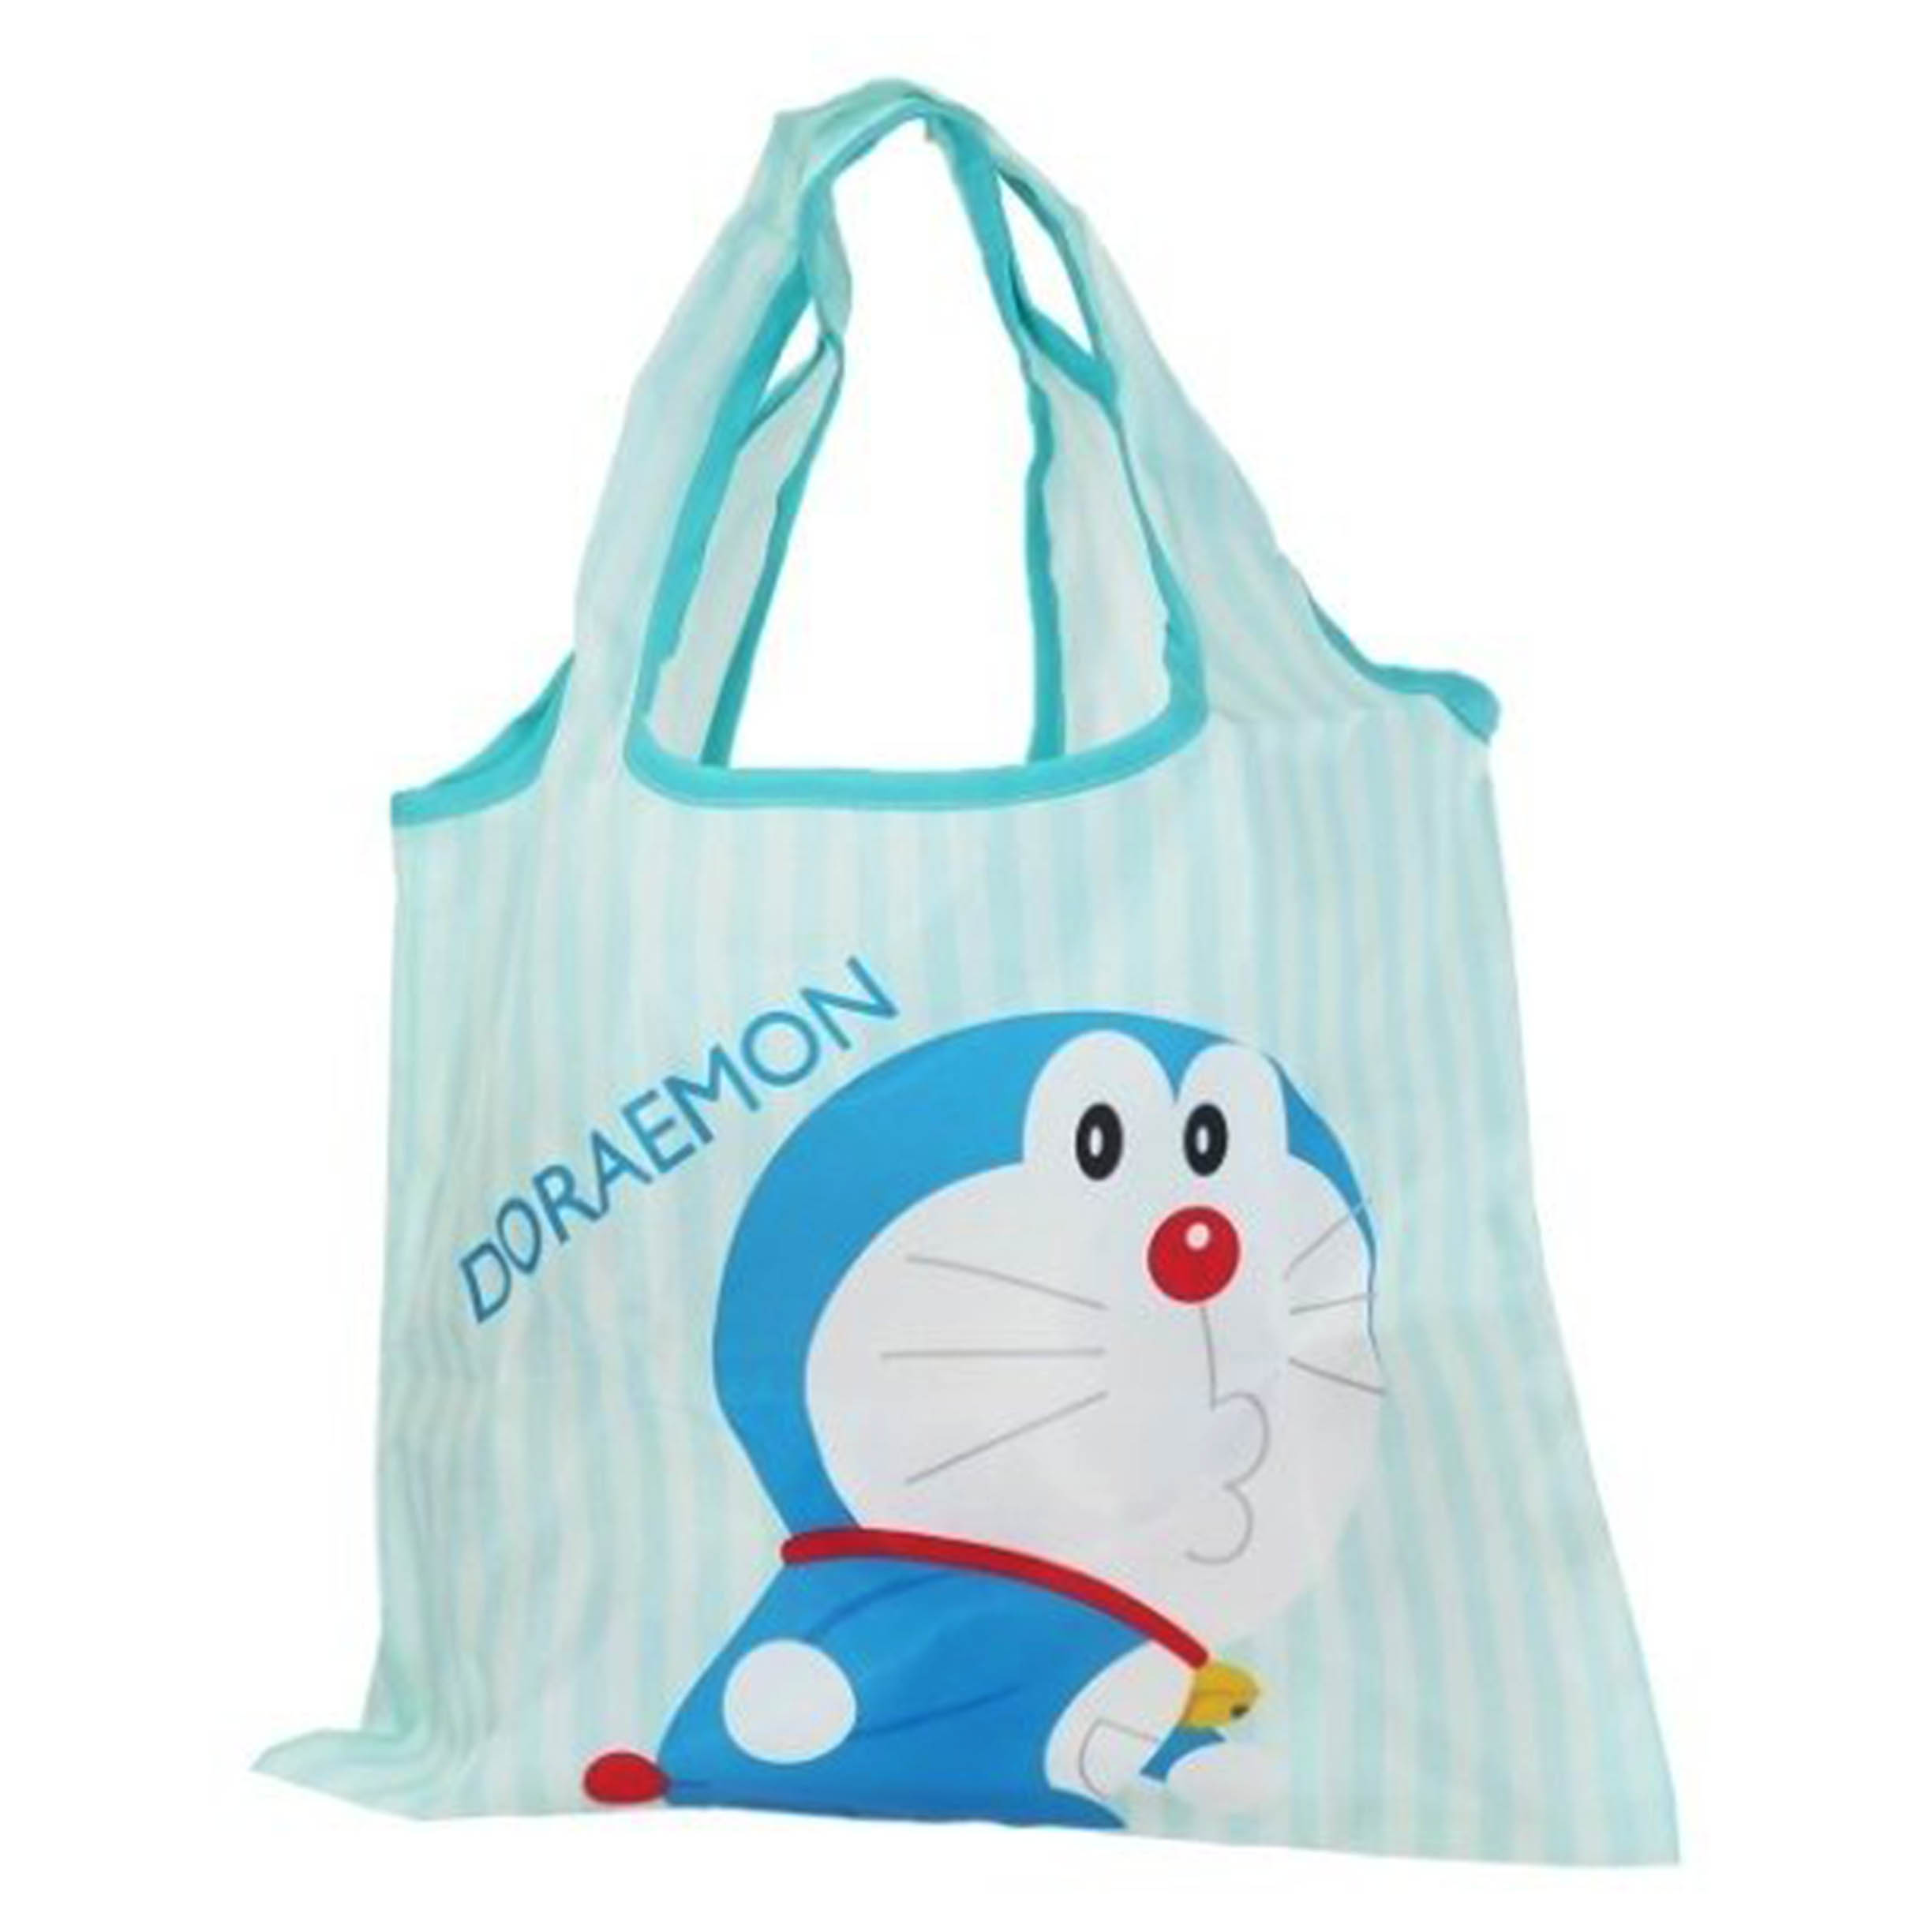 環保購物袋-哆啦A夢 DORAEMON 三麗鷗 Sanrio 日本進口正版授權